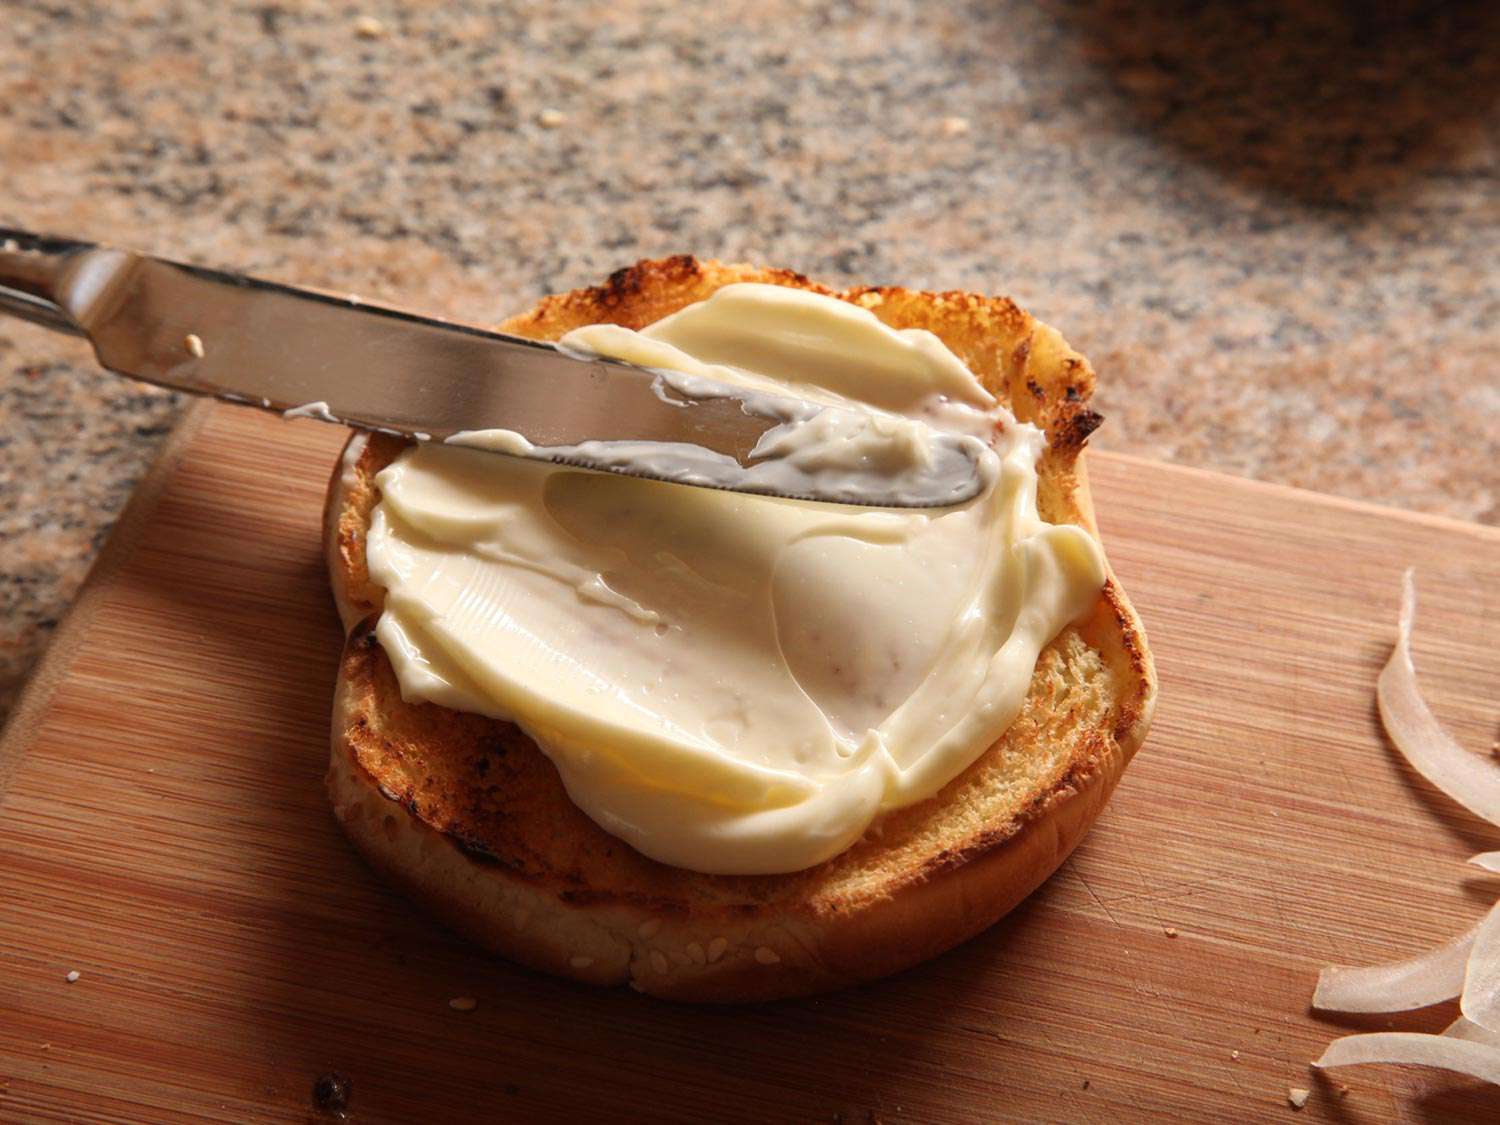 蛋黄酱涂在烤面包上。